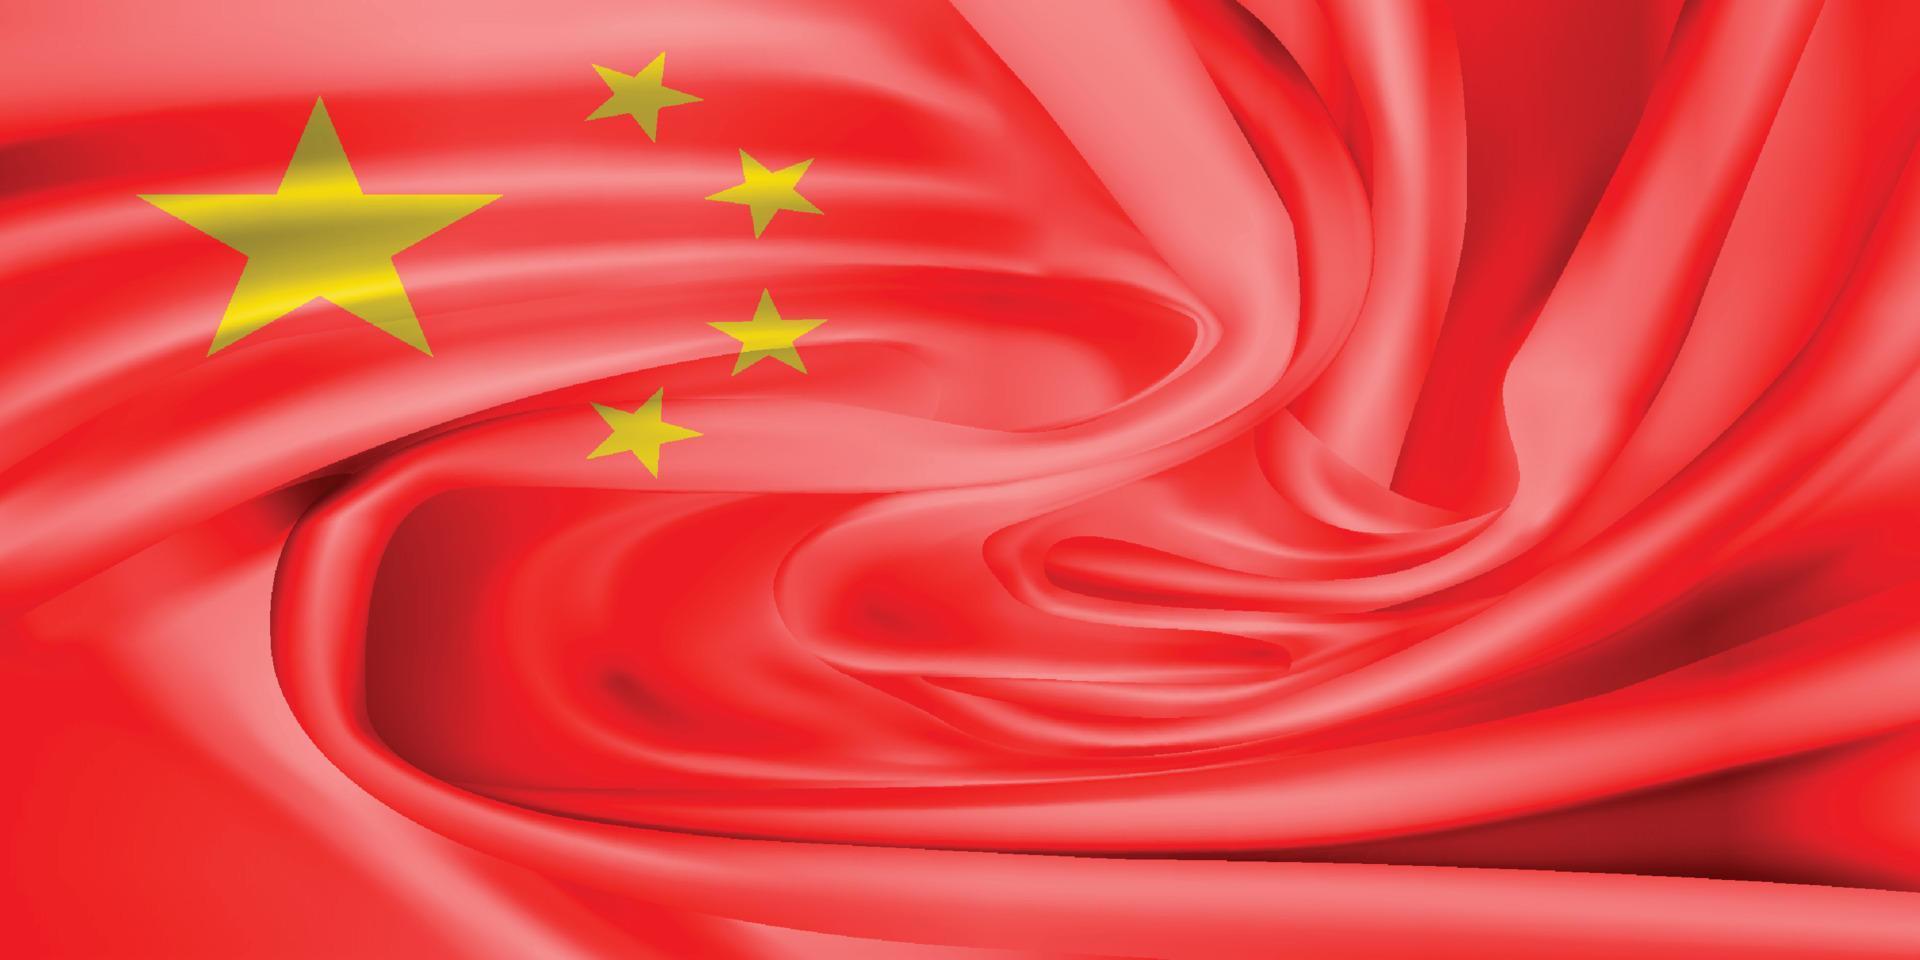 de nationale vlag van china.the symbool van de staat op golvende katoenen stof. realistische vectorillustratie.vlagachtergrond met doektextuur vector